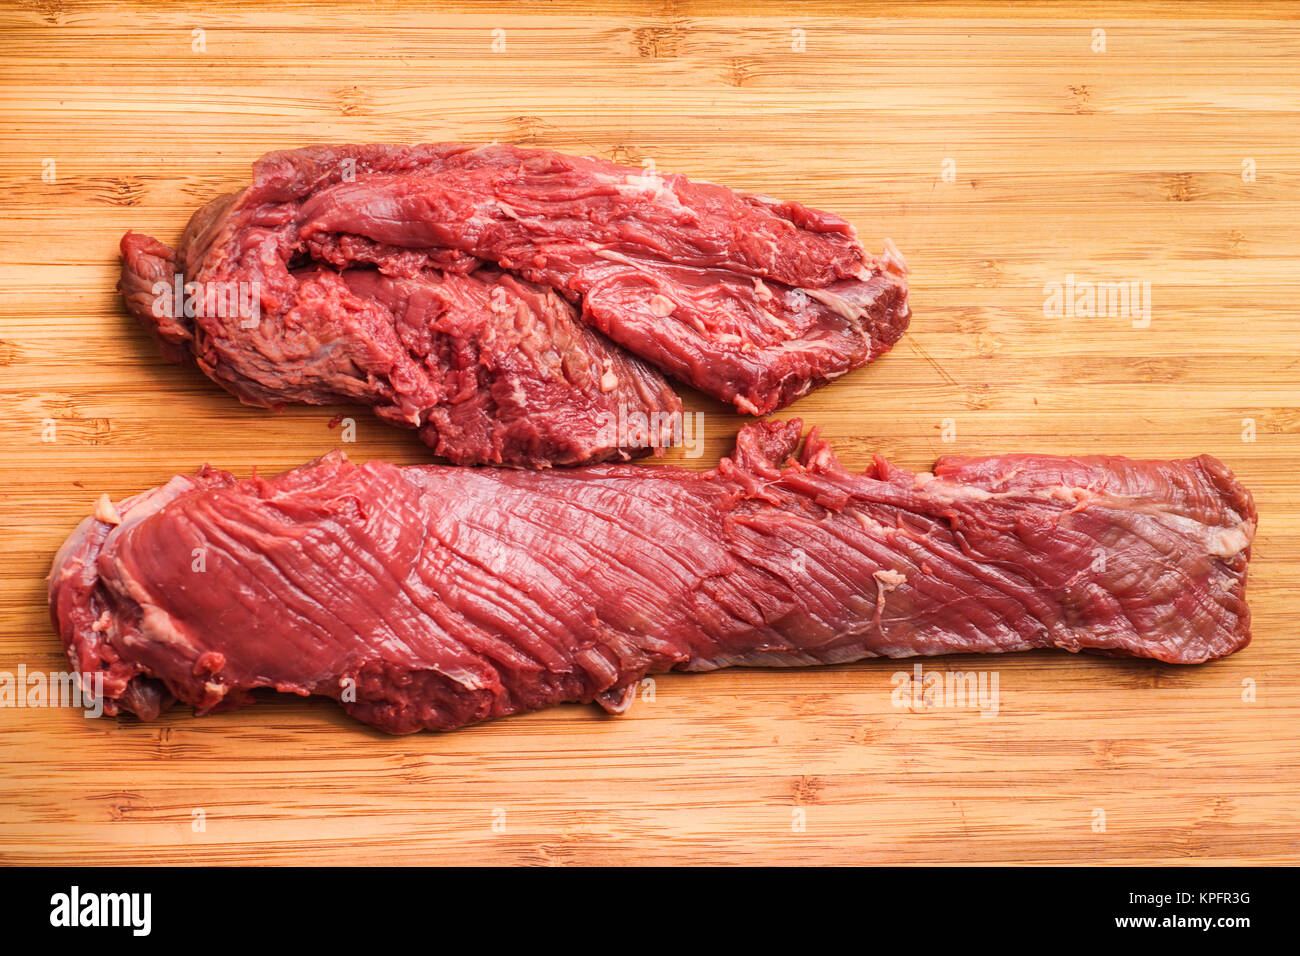 Hanging tender, Hanger steak, onglet Stock Photo